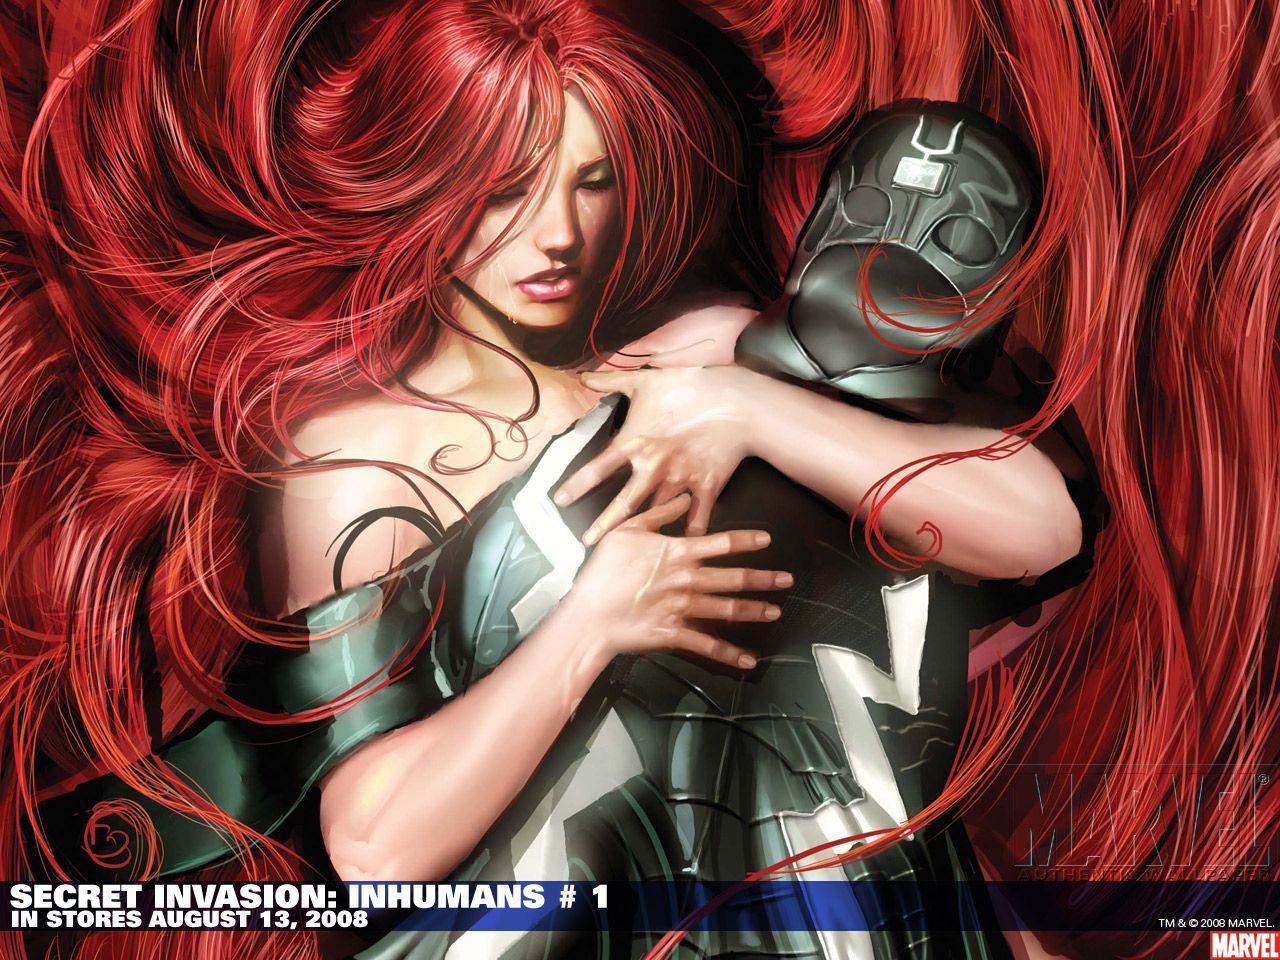 Secret Invasion: Inhumans (2008) Wallpaper. Secret Invasion